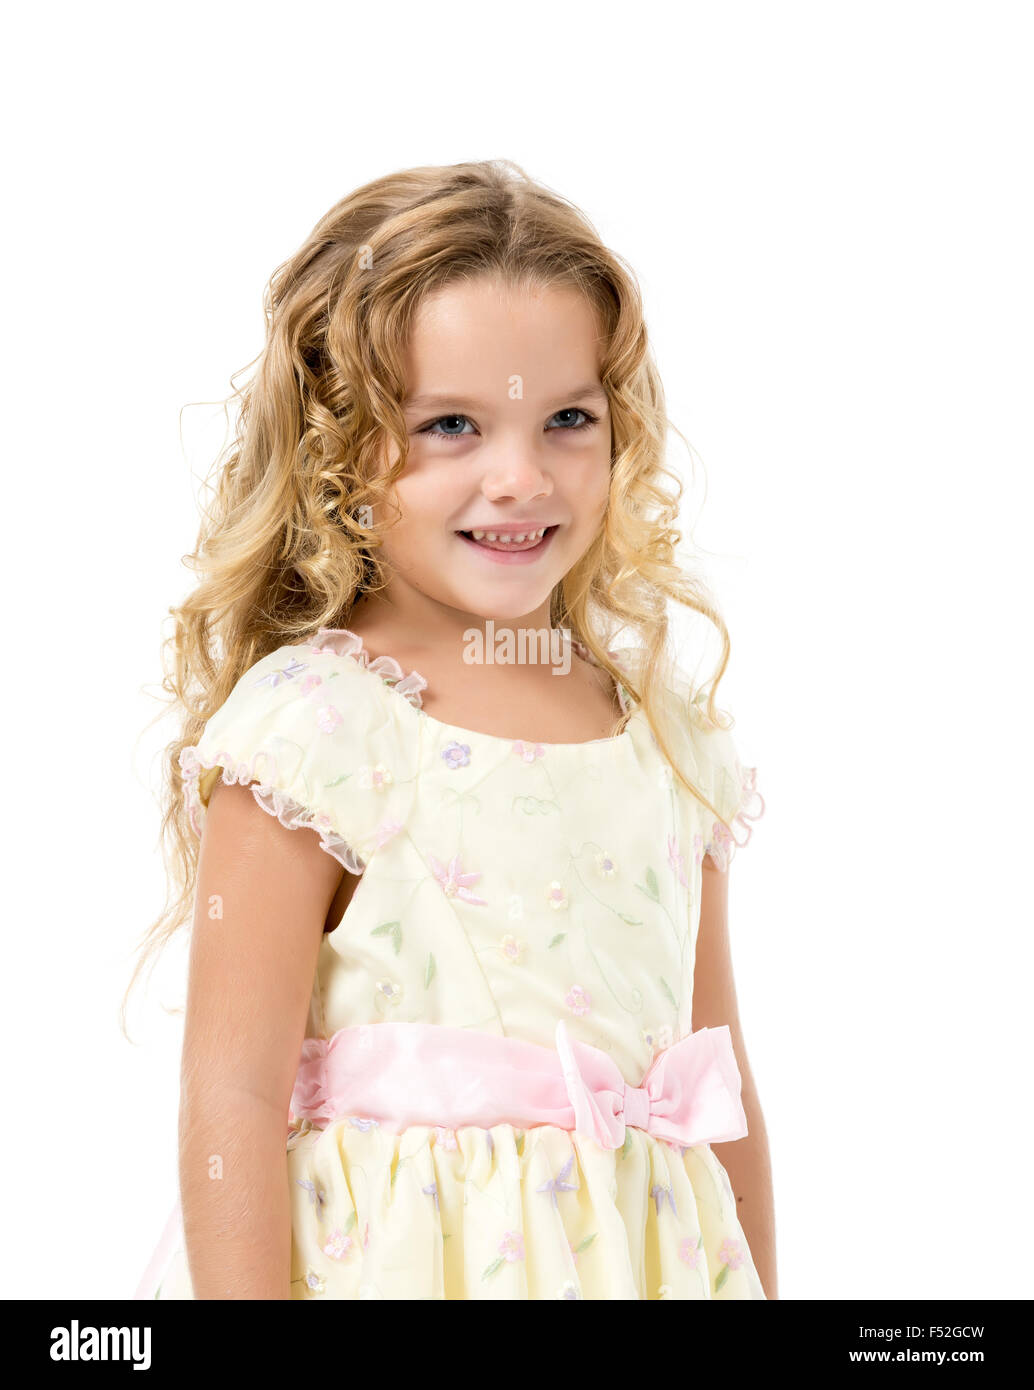 Petite fille dans une robe de lumière, posant sur fond blanc Banque D'Images